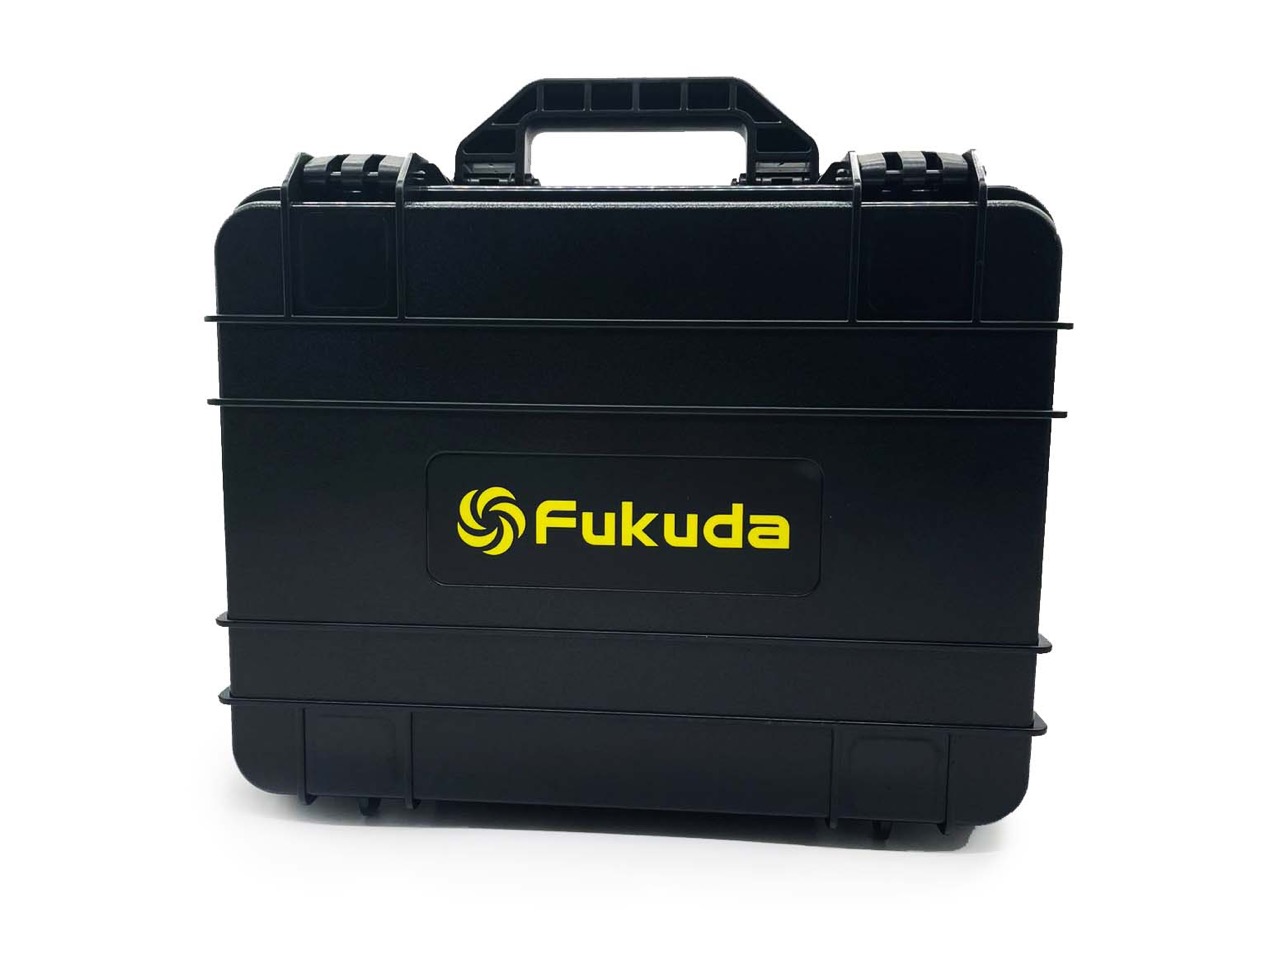 Fukuda 4d mw 94d 4gx. Fukuda MW-94d-4gx. Fukuda 360 4d MW-94d-4gx. Fukuda 4d MW-94d-4gx Pro. Лазерный уровень Fukuda 4d MW-94d-4gx Pro.